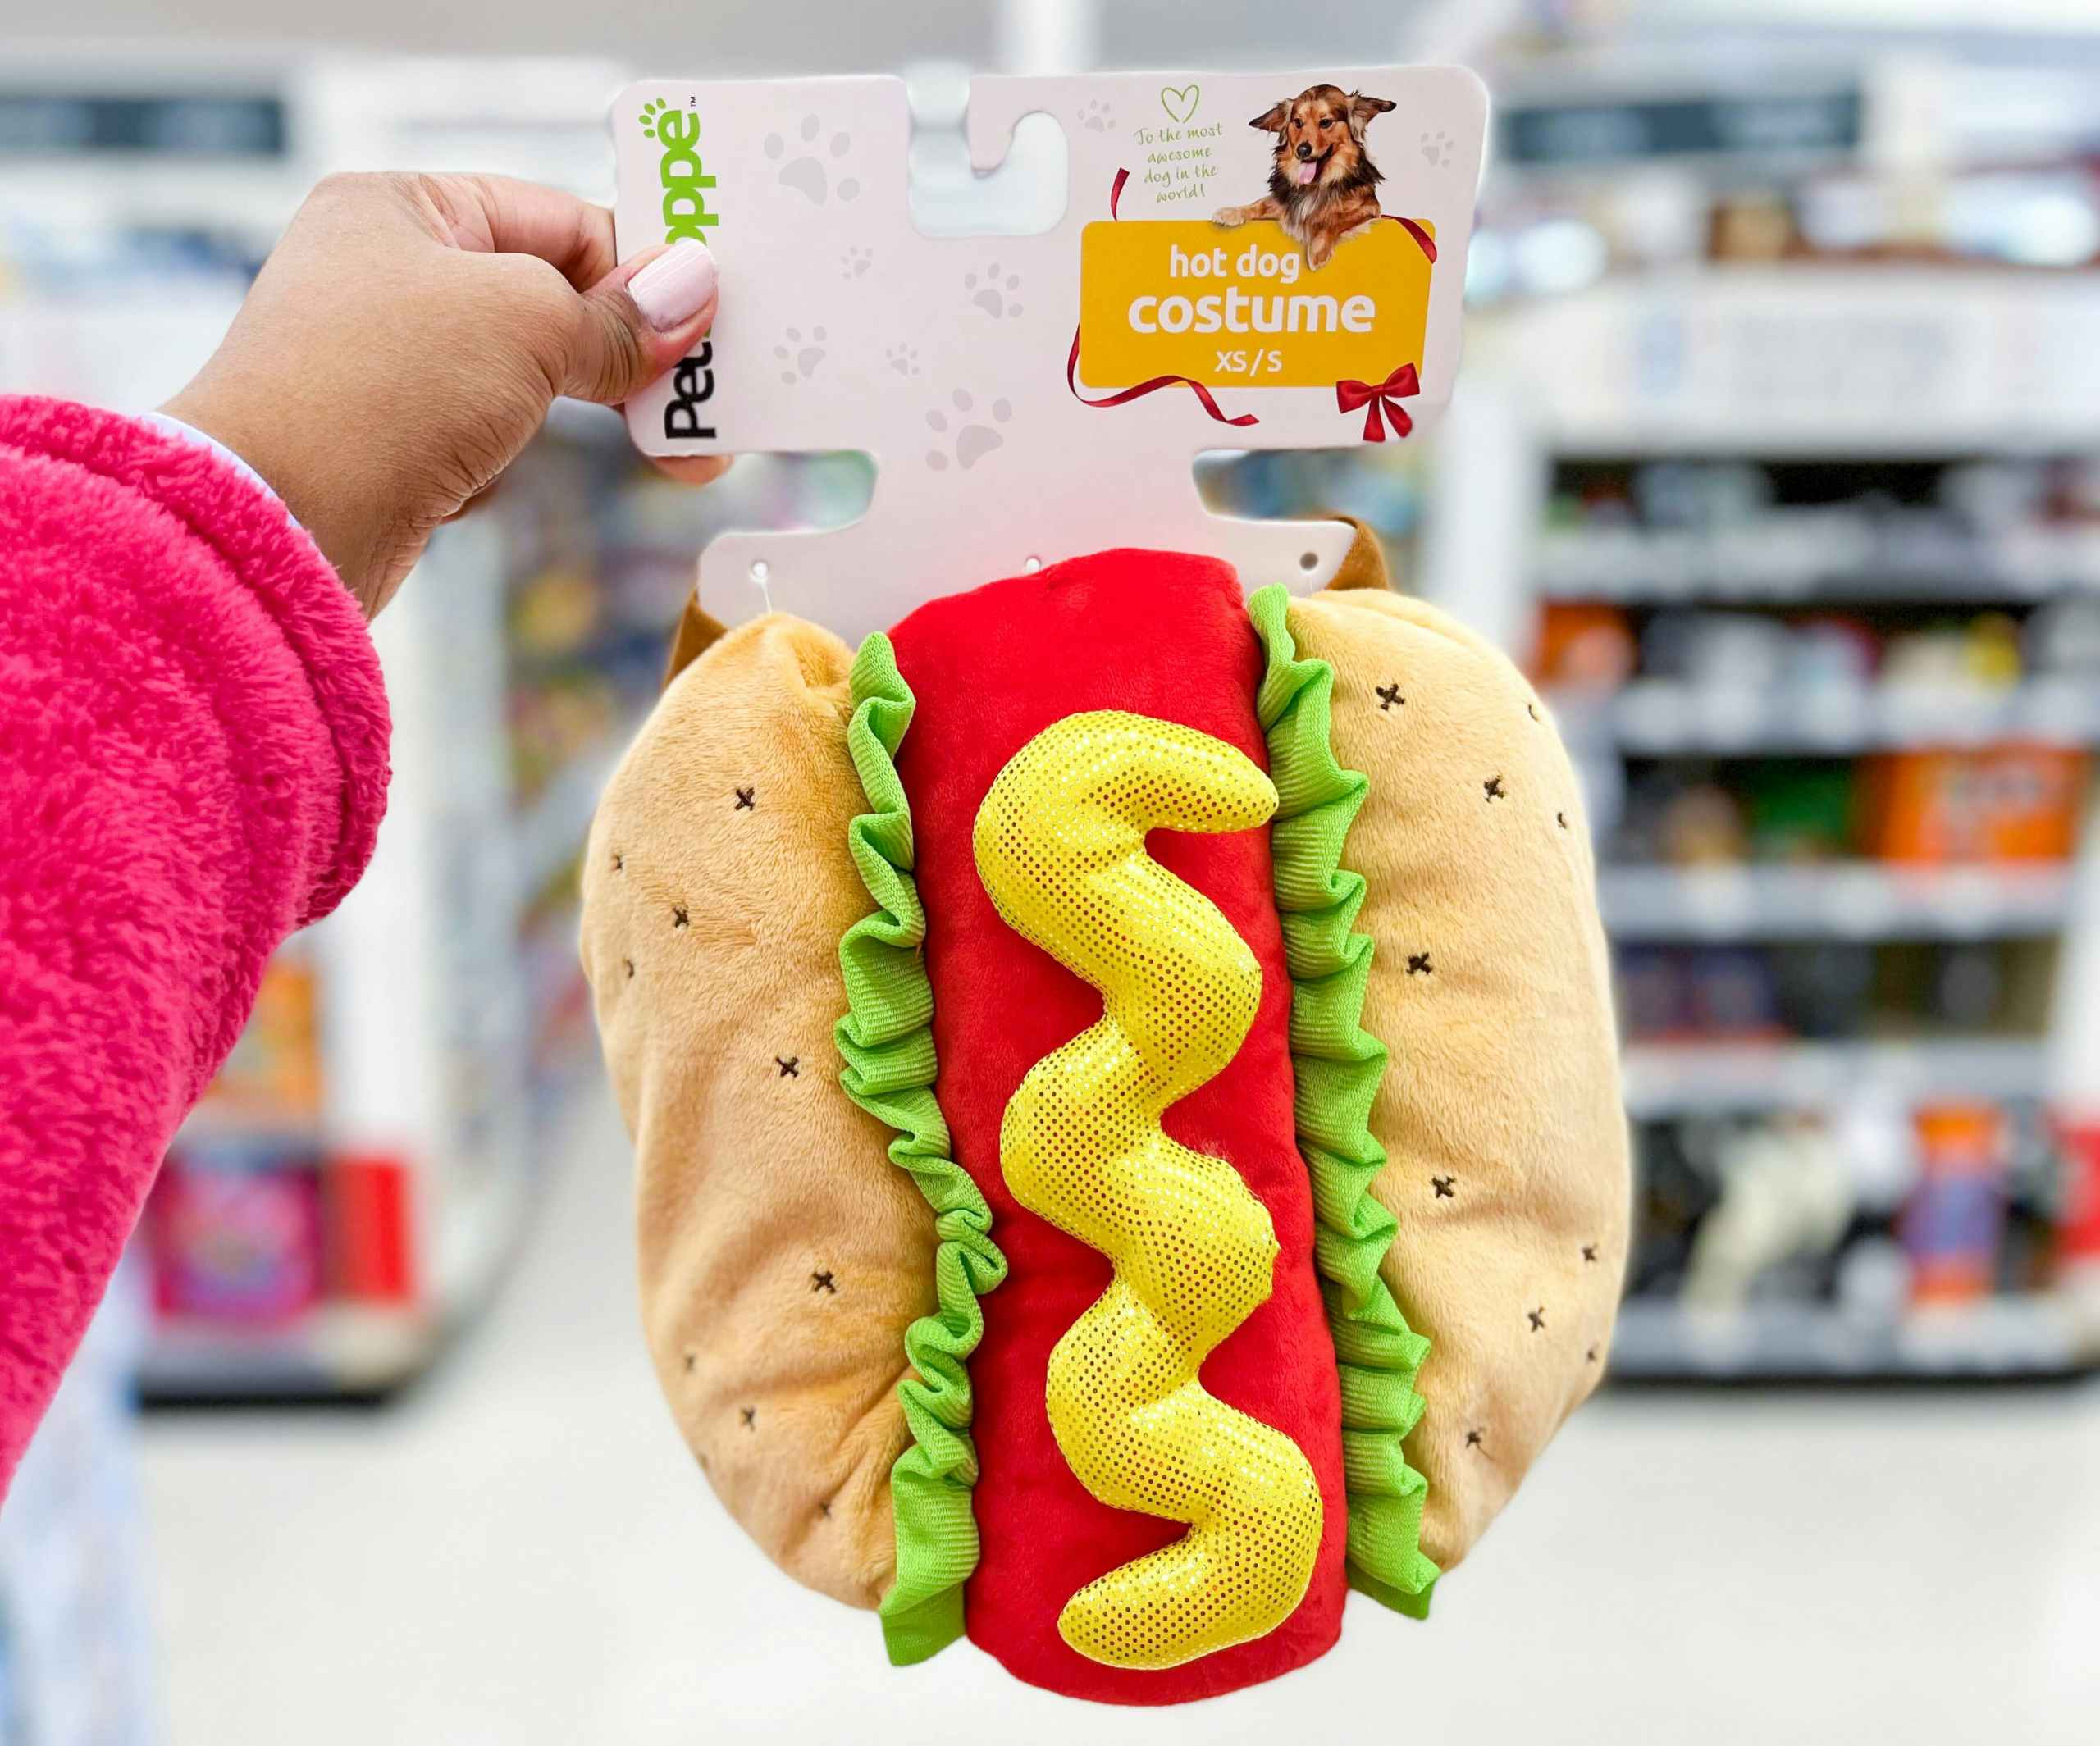 hand holding Petshoppe hotdog costume in aisle